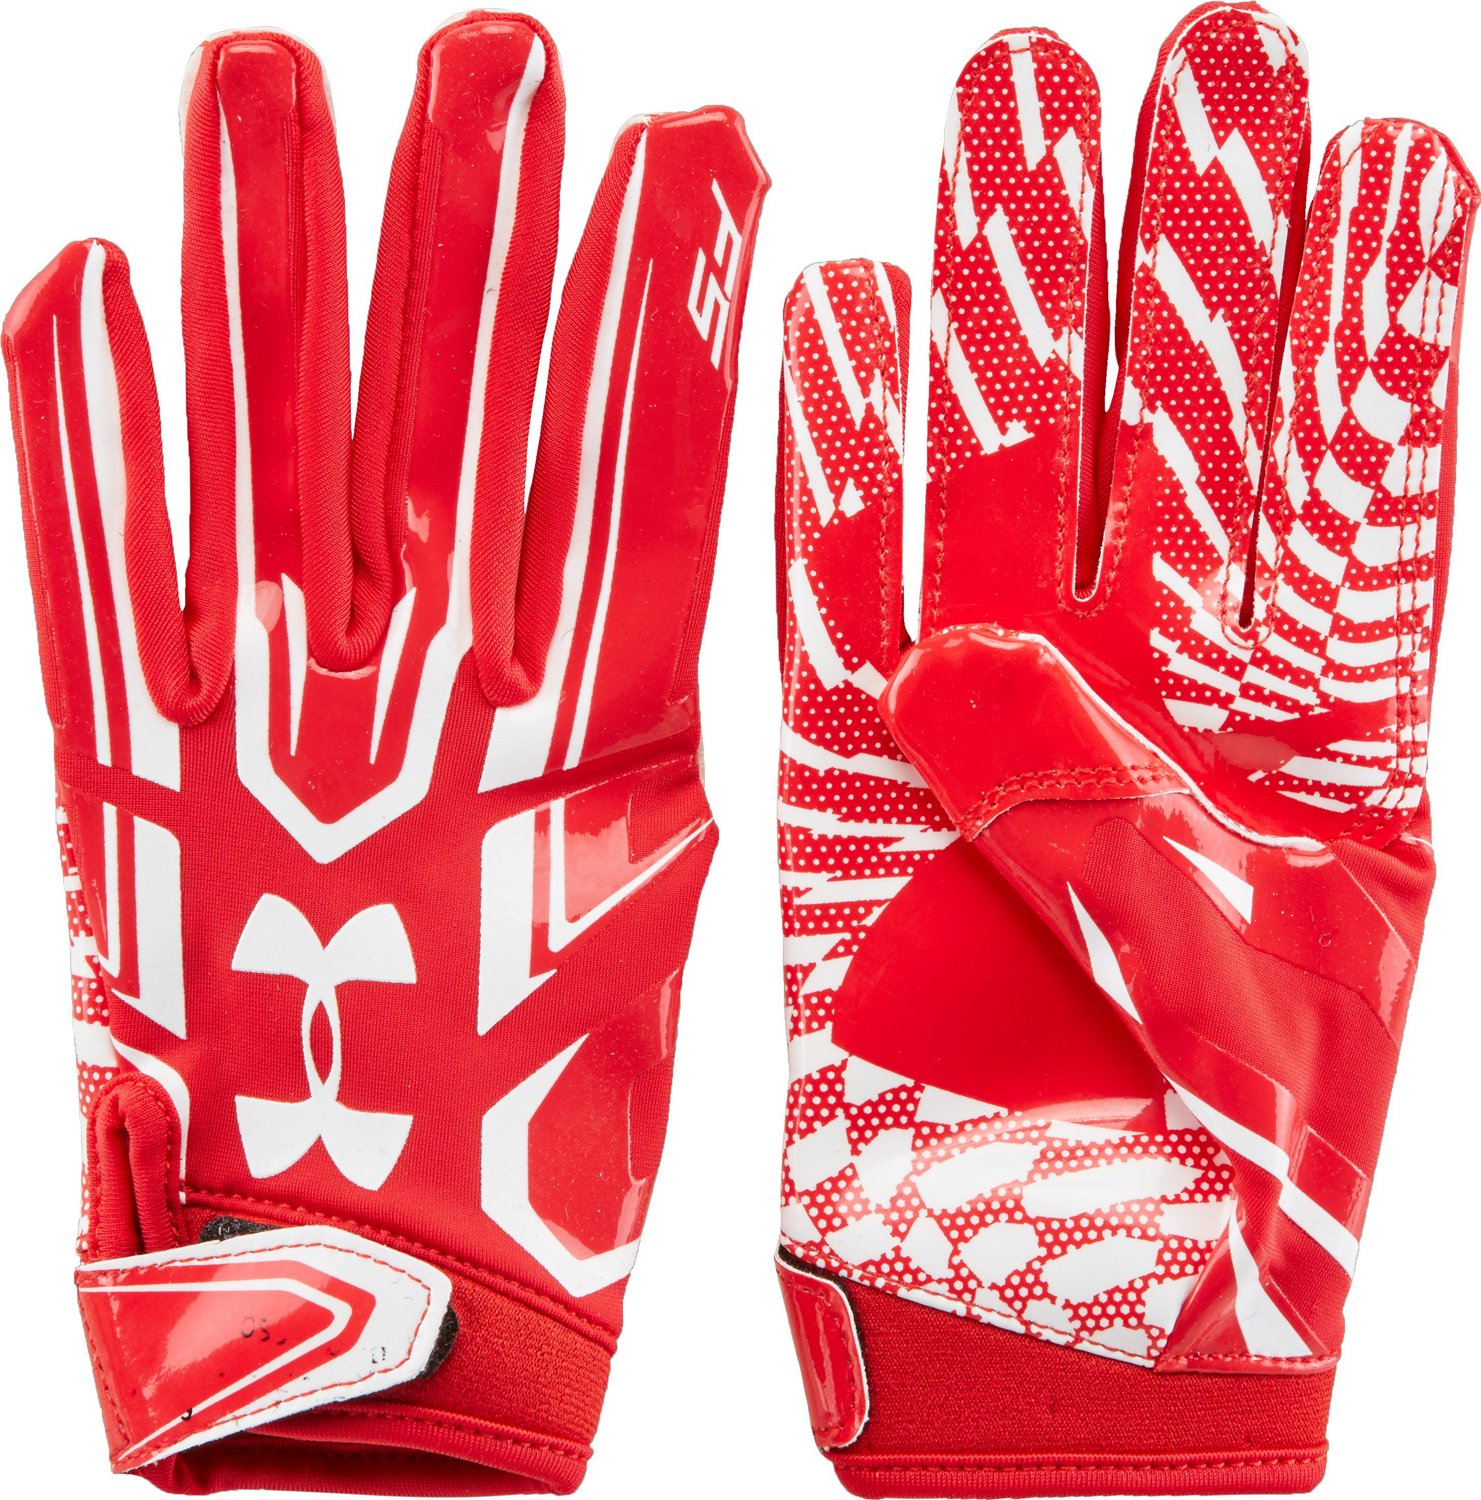 nike football gloves custom